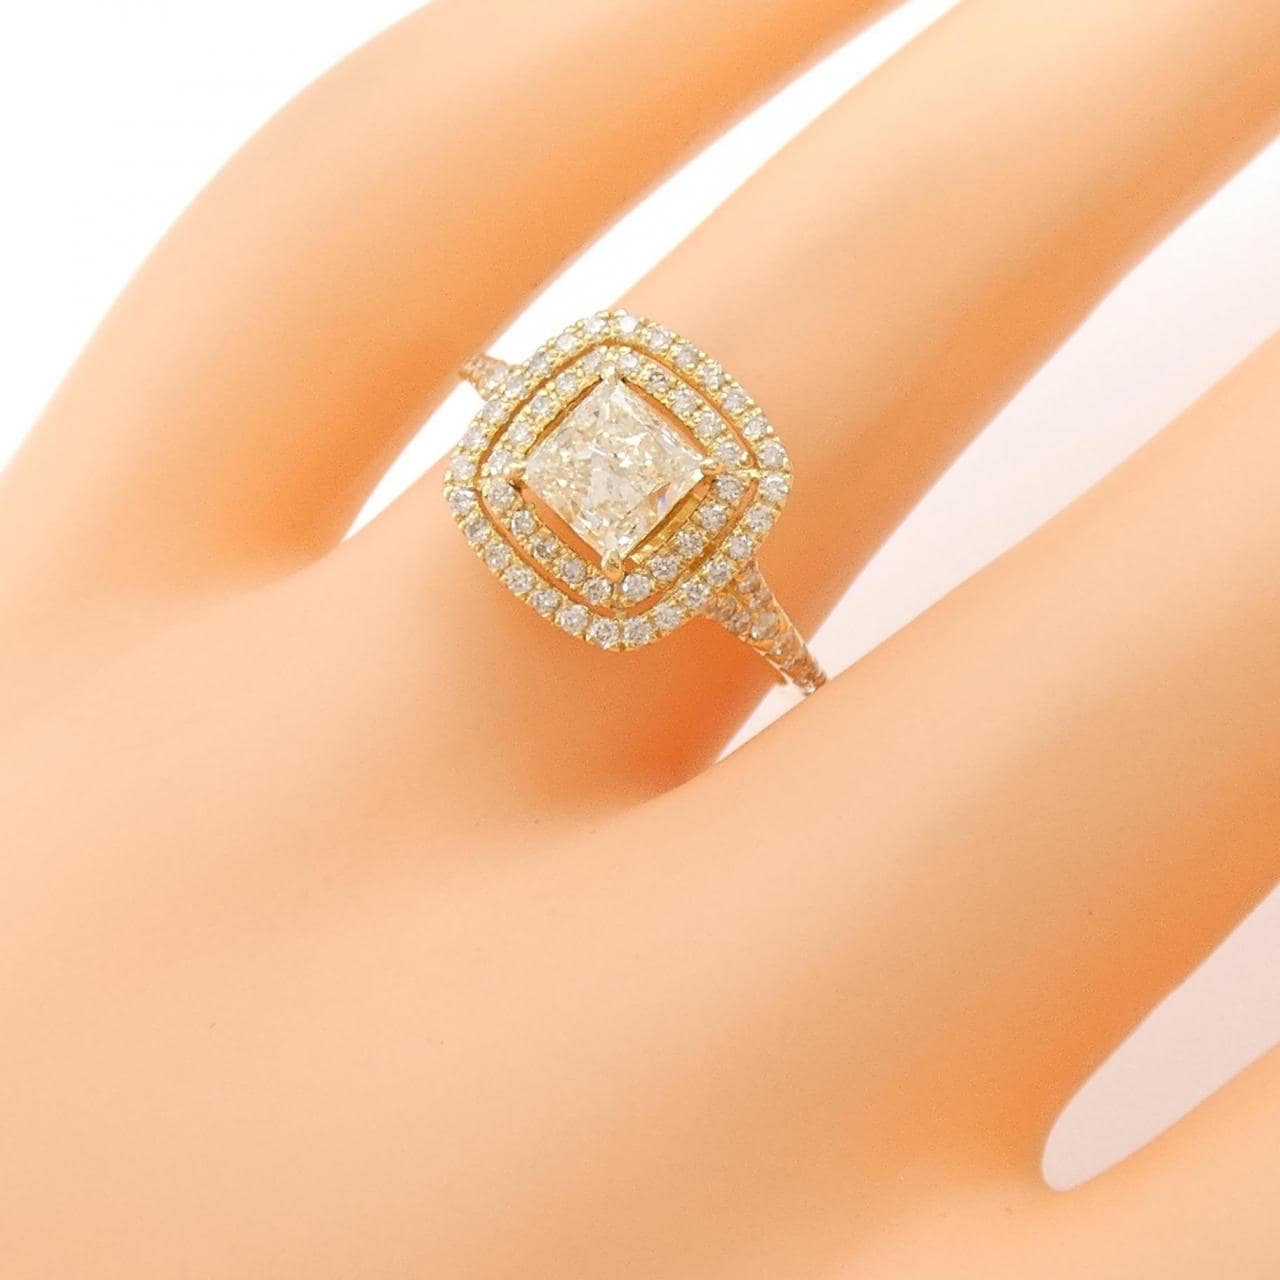 [新品] K18YG鑽石戒指 1.00 克拉 LY SI2 花式切割